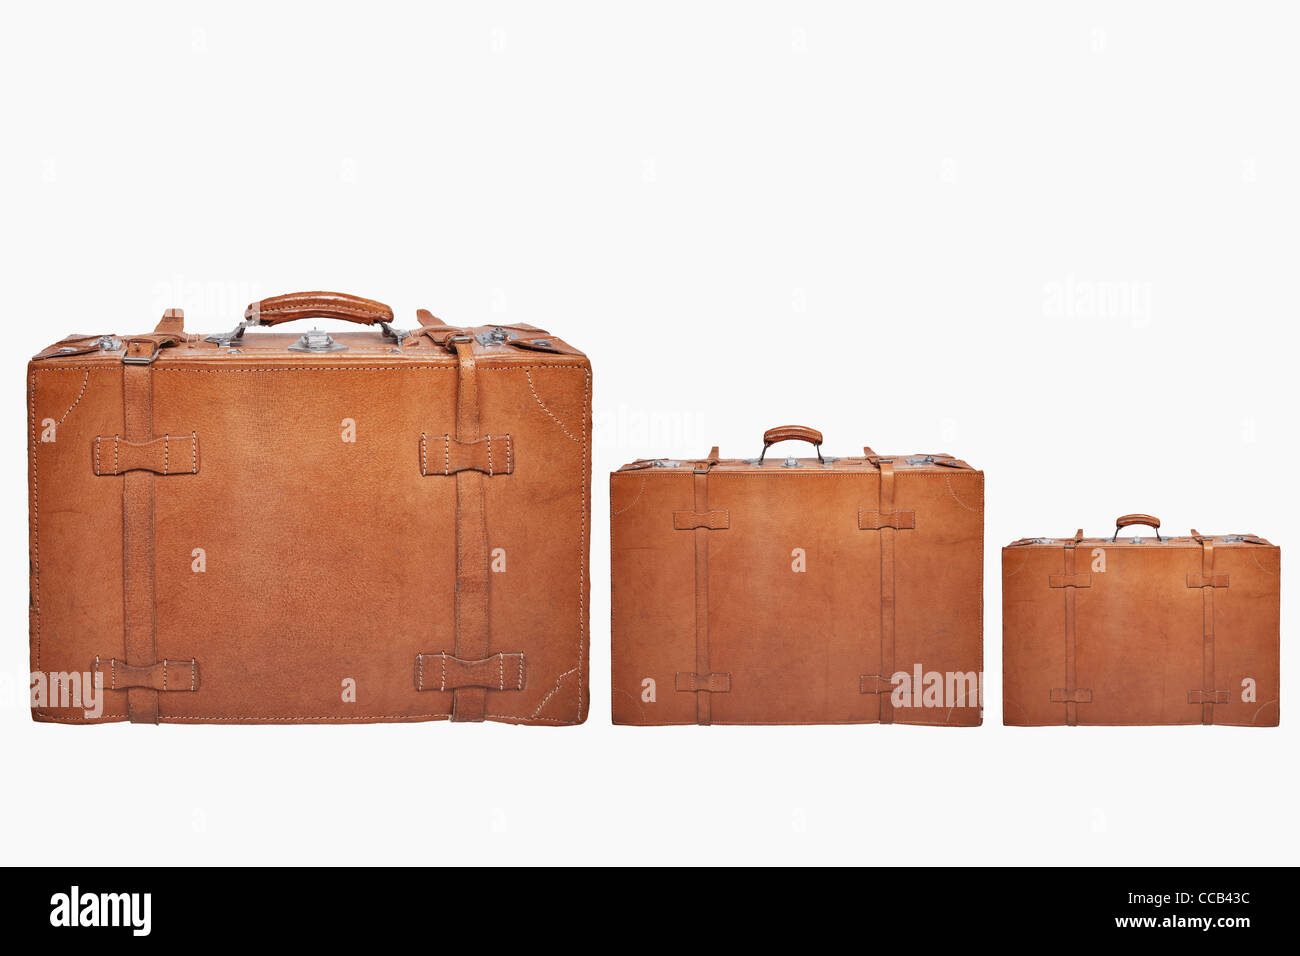 Detailansicht dreier stehender, alten braunen Lederkoffer | Detail photo of three old brown leather suitcases, upright Stock Photo